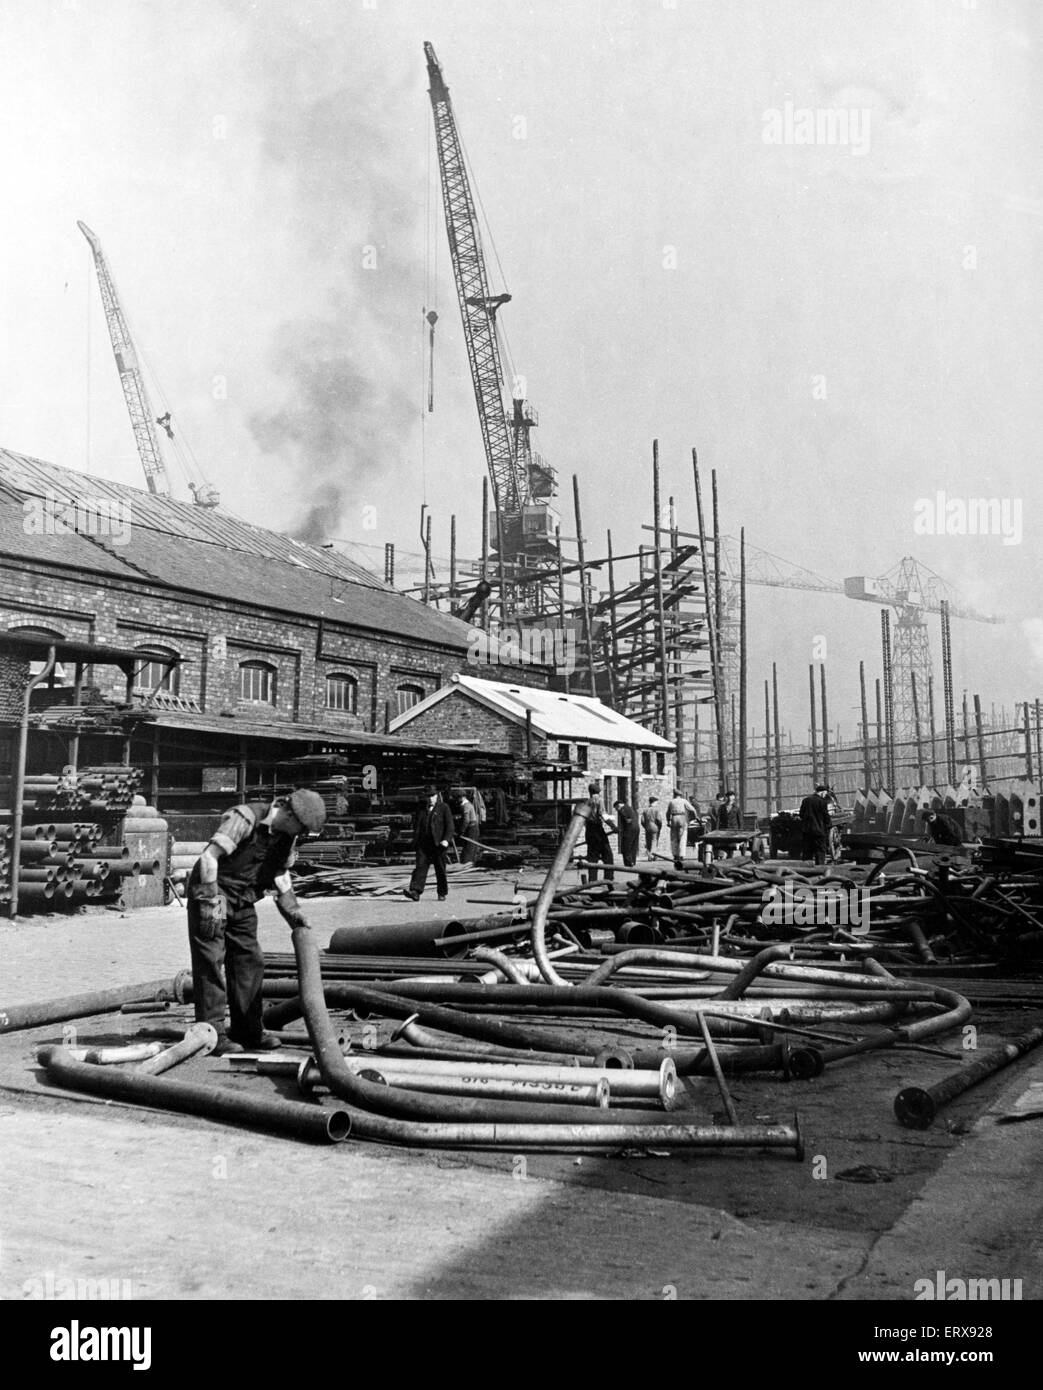 Une partie de l'énorme de magasins Stephen and Sons Ltd, Glasgow. C'était une société de construction navale écossais basé à Linthouse, Govan à Glasgow, sur la rivière Clyde. Circa, 1950. Banque D'Images